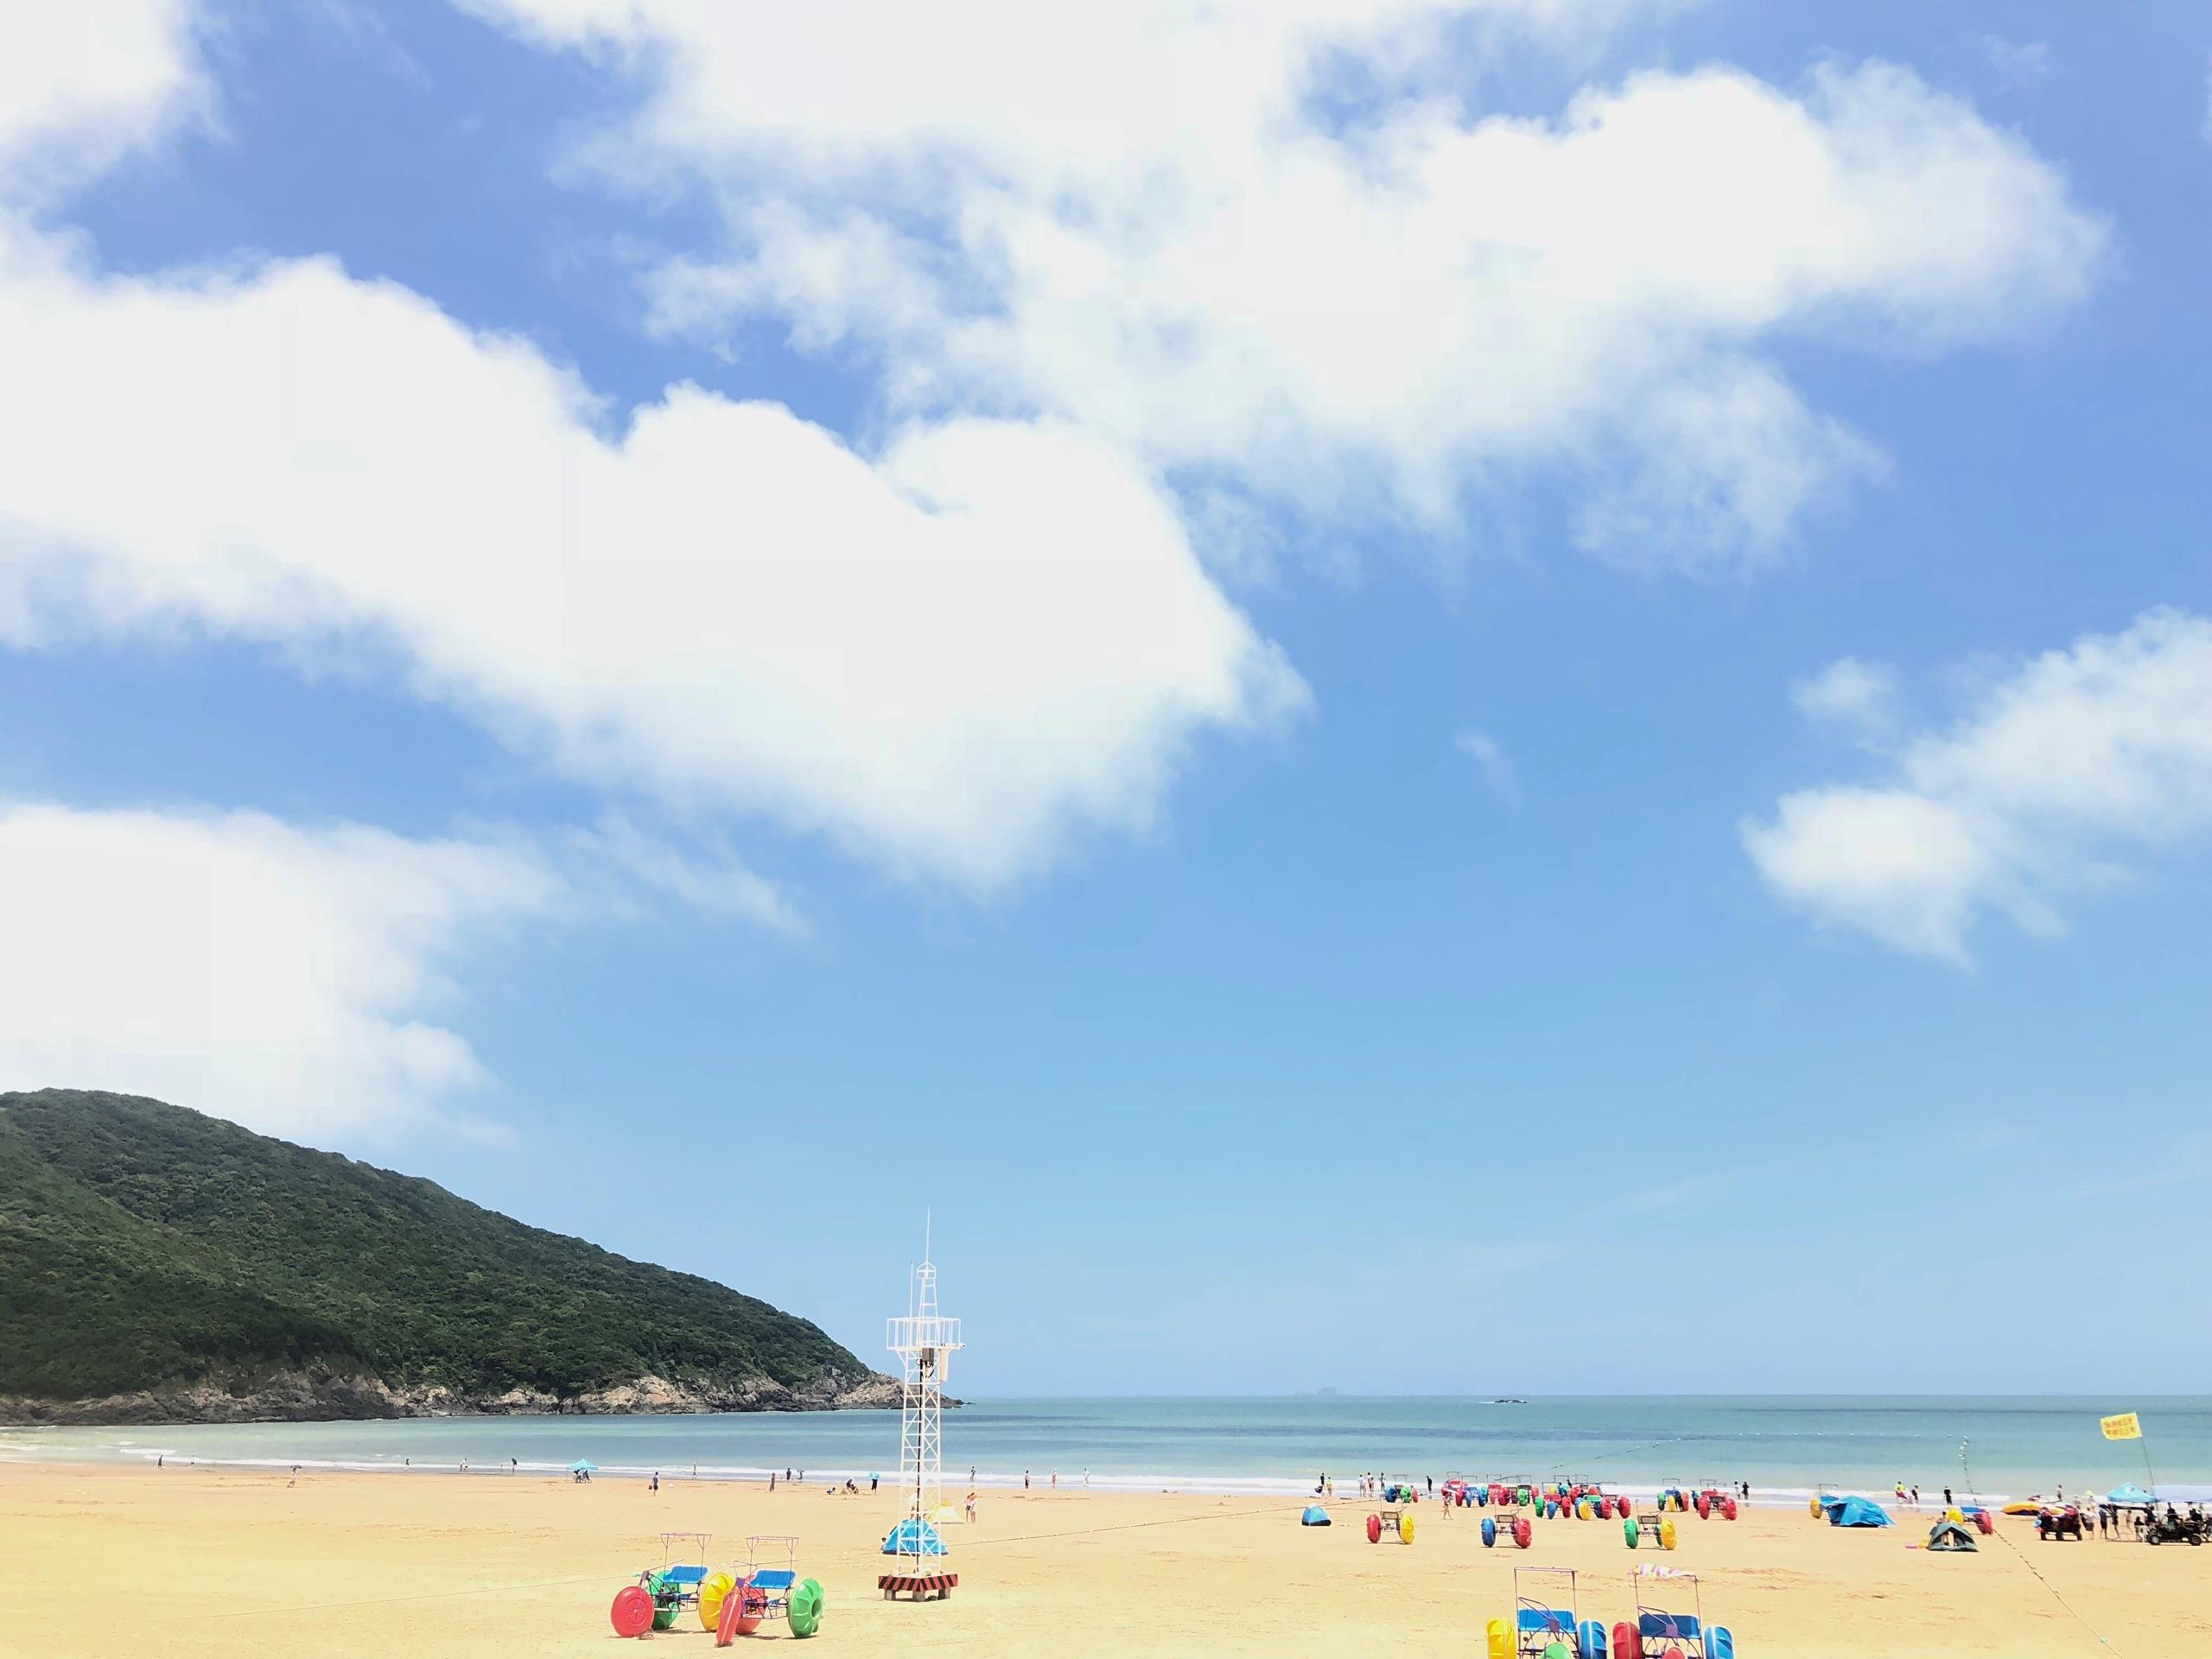 【携程攻略】浙江东旦村金沙滩景点,风景还是可以的，玩的人不多，但是禁止游泳。